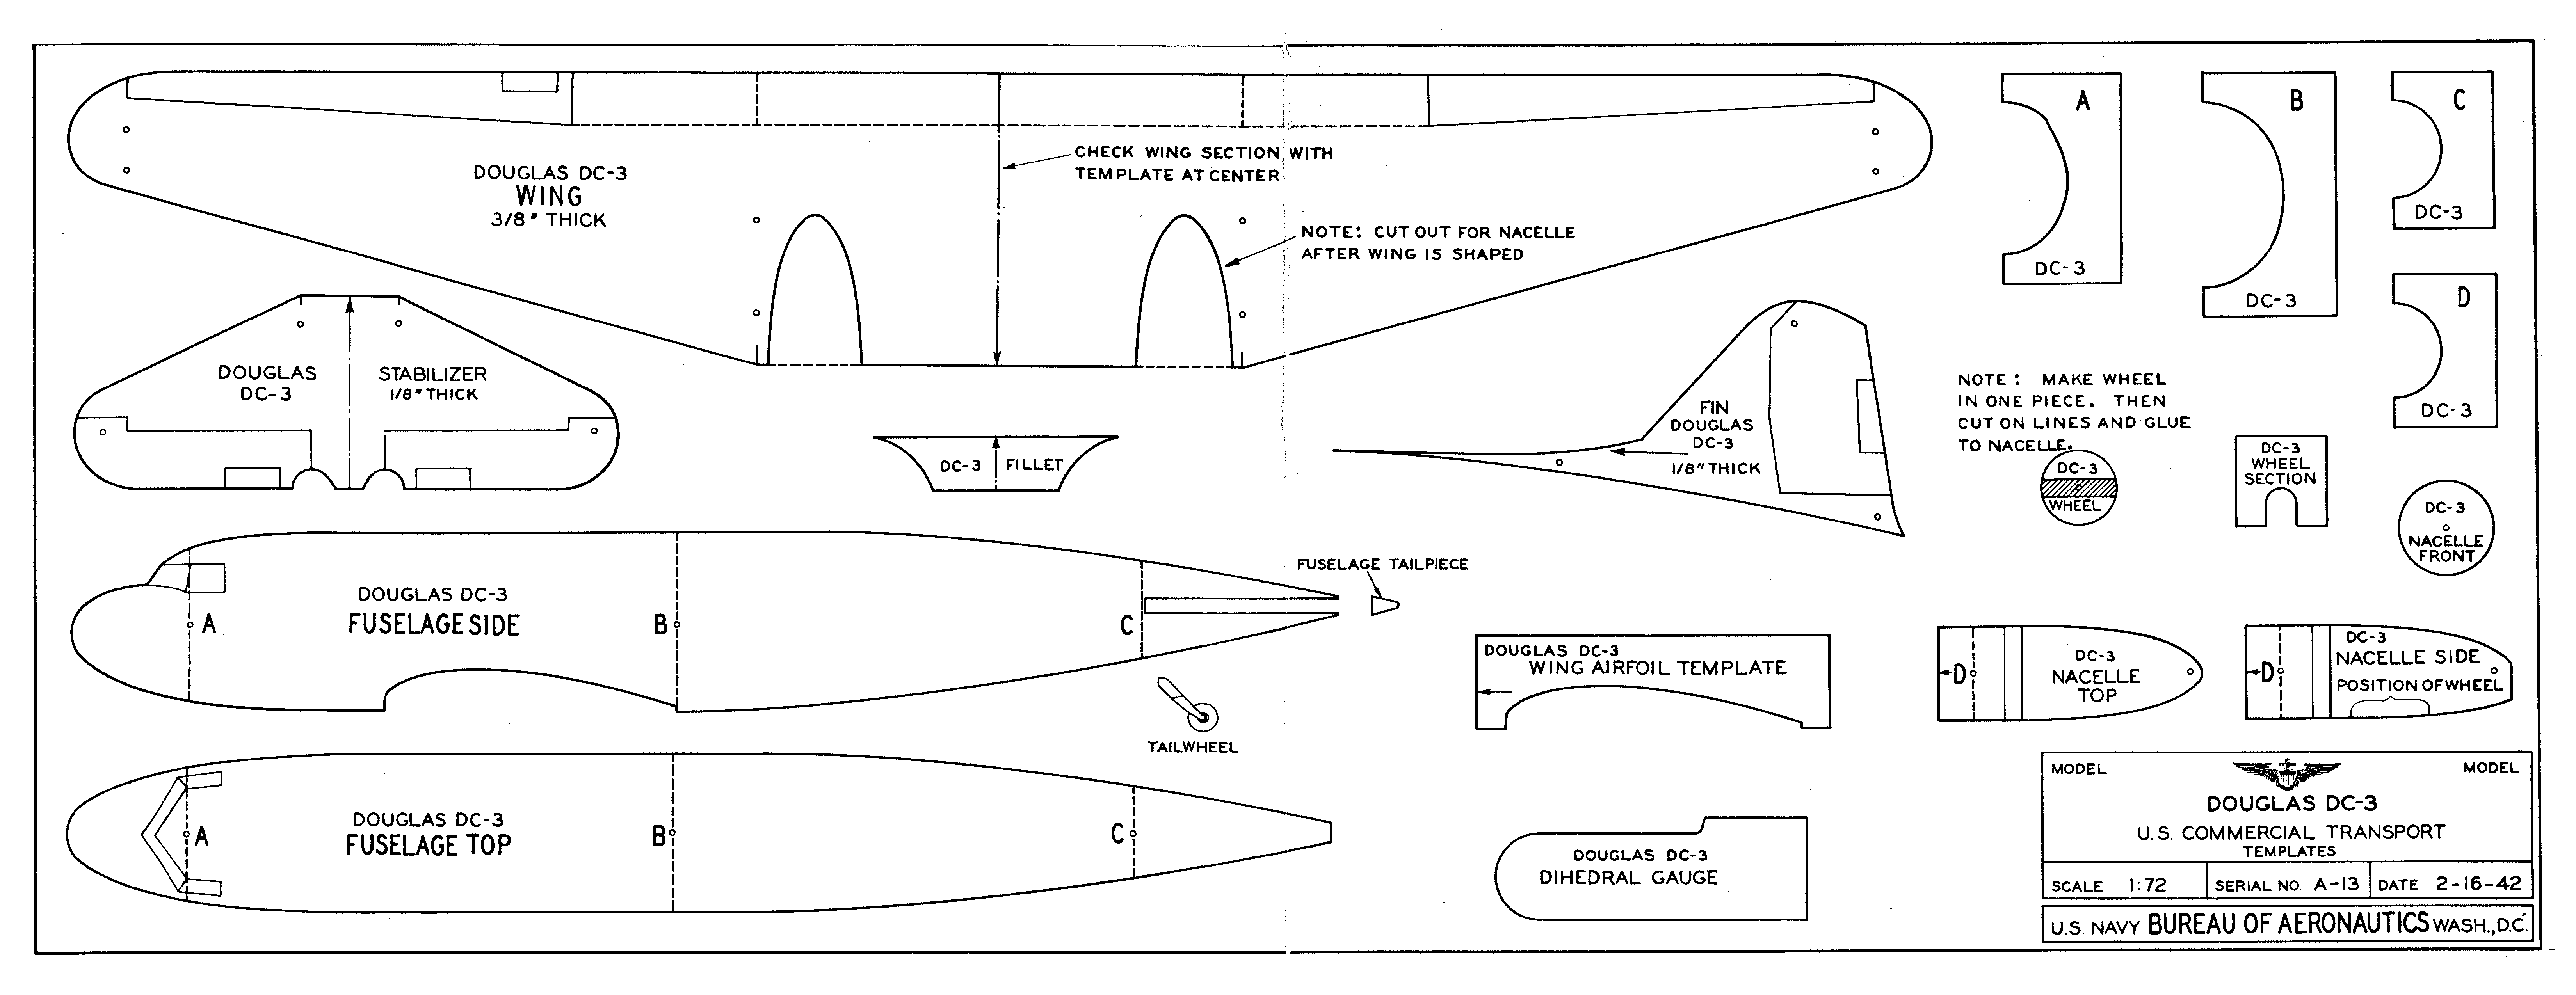 Douglas Dc-3 Model Plans | aapoon.com